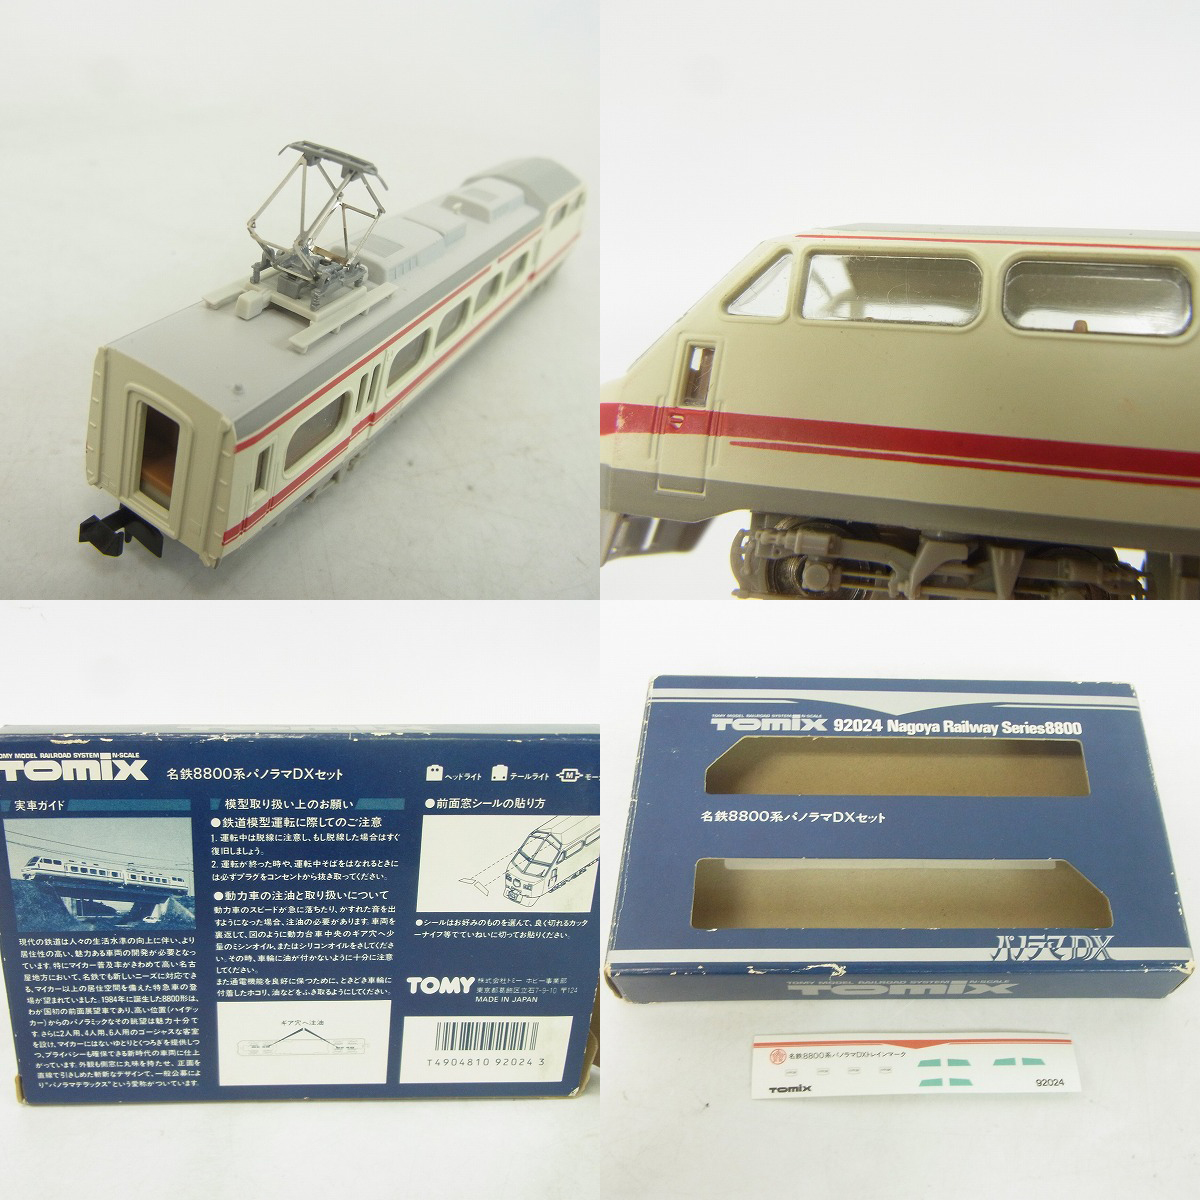 賜物 TOMIX 92024 名鉄8800系 パノラマDXセット 鉄道模型 Nゲージ - 鉄道模型